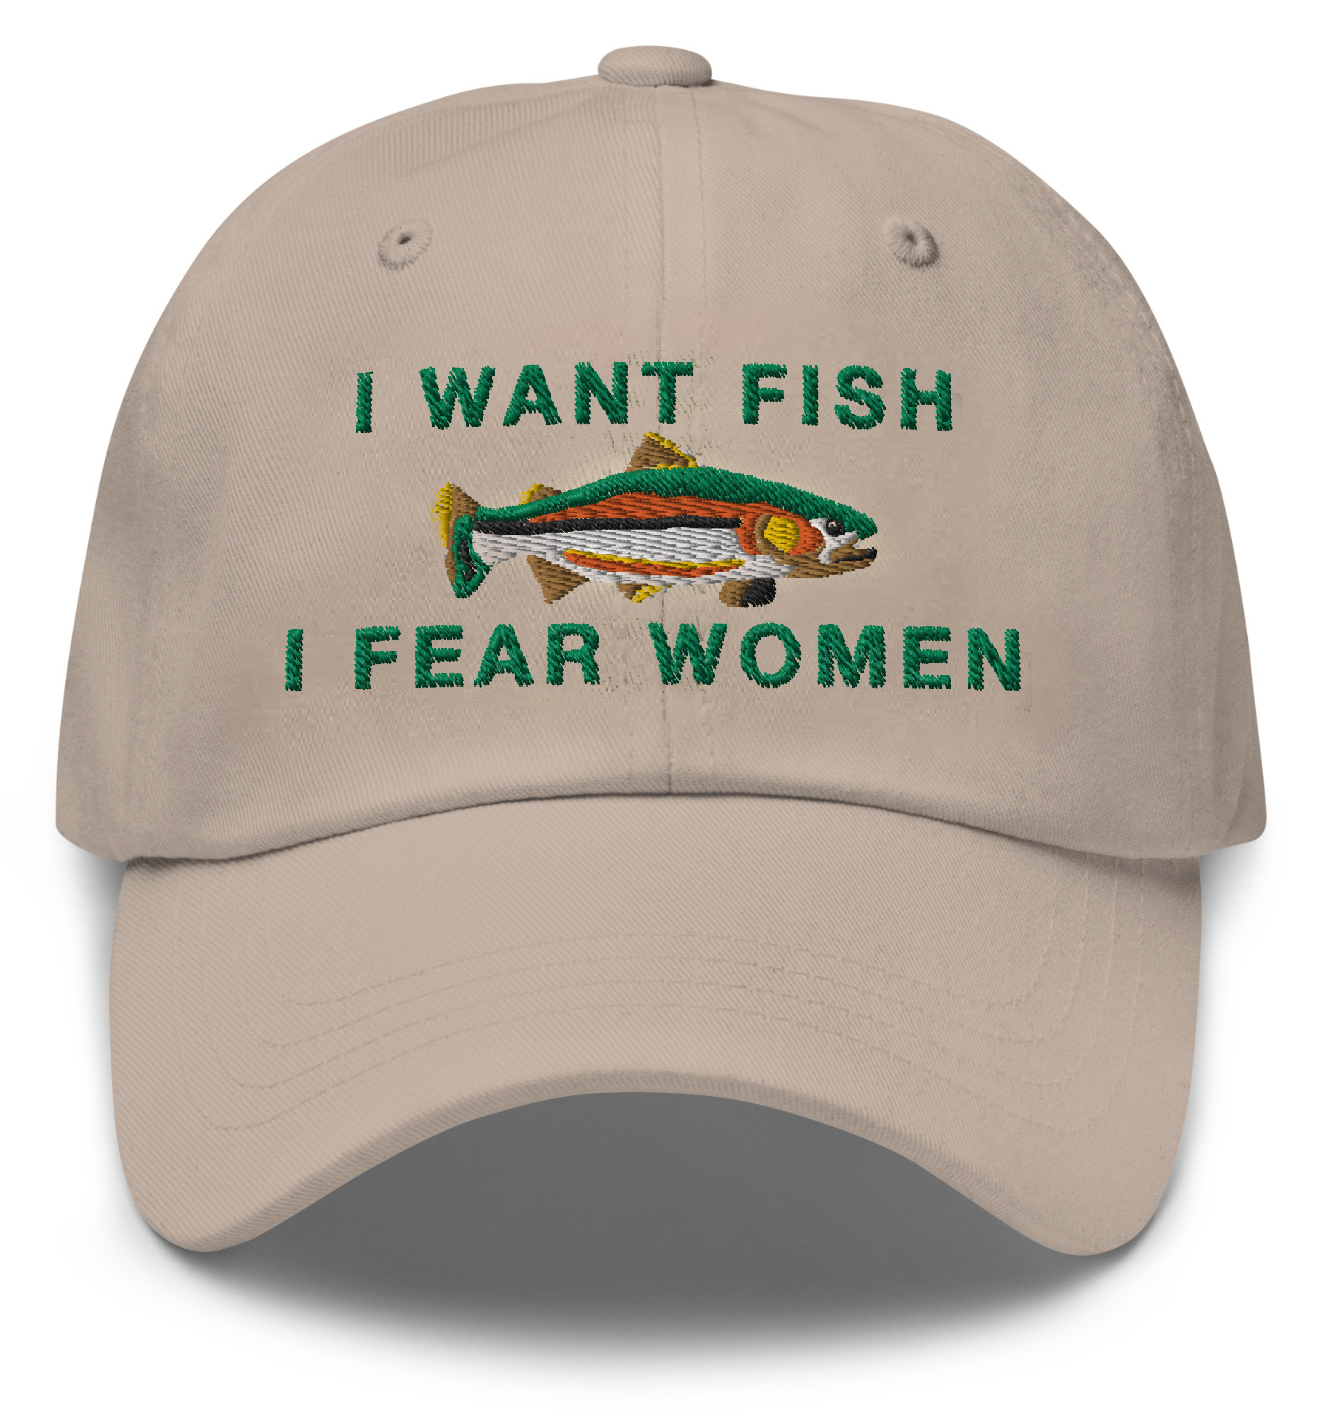 I want fish –